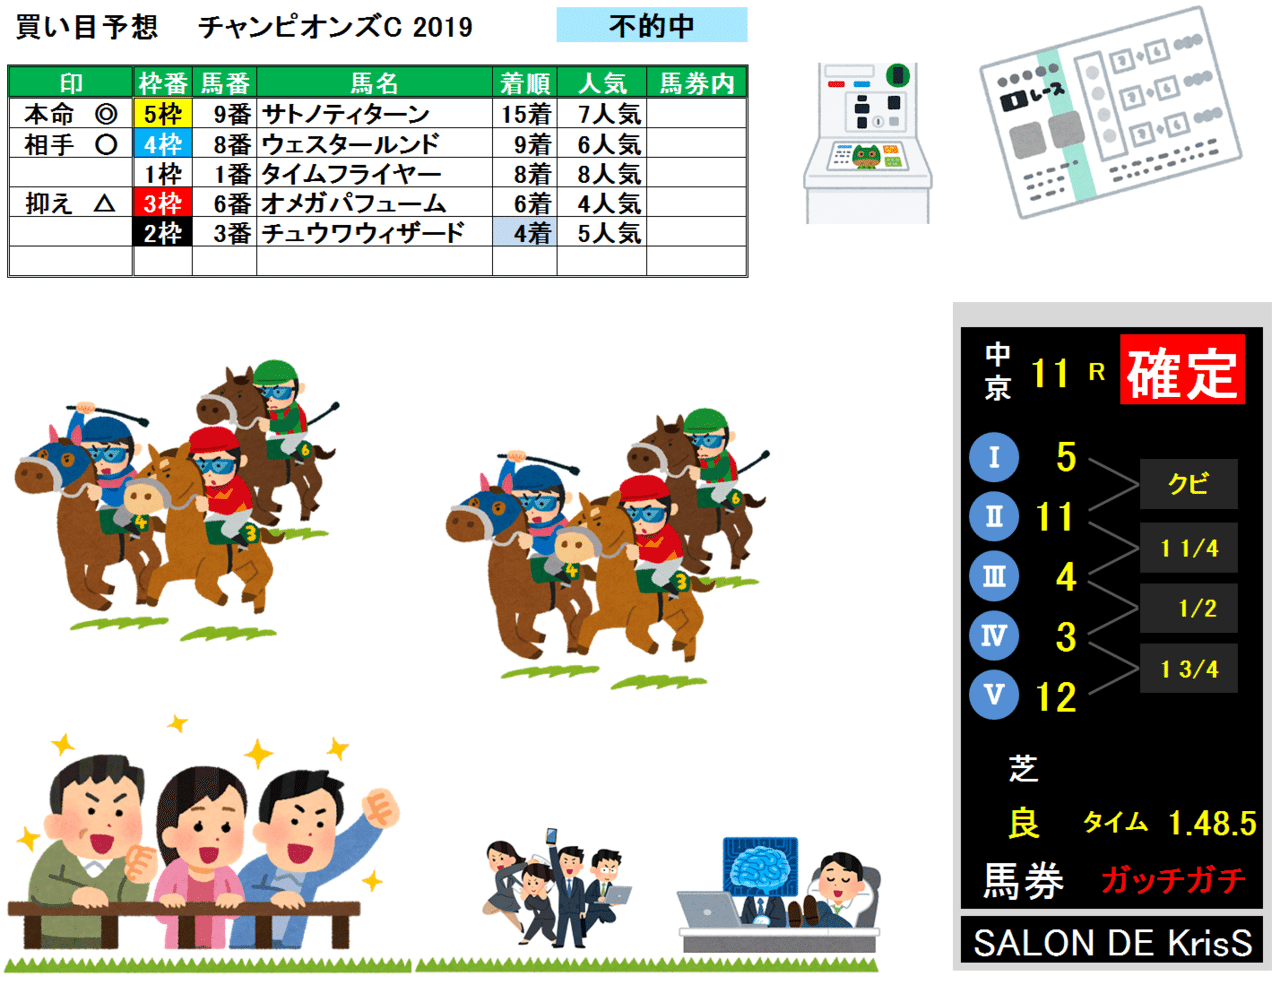 チャンピオンズC-result